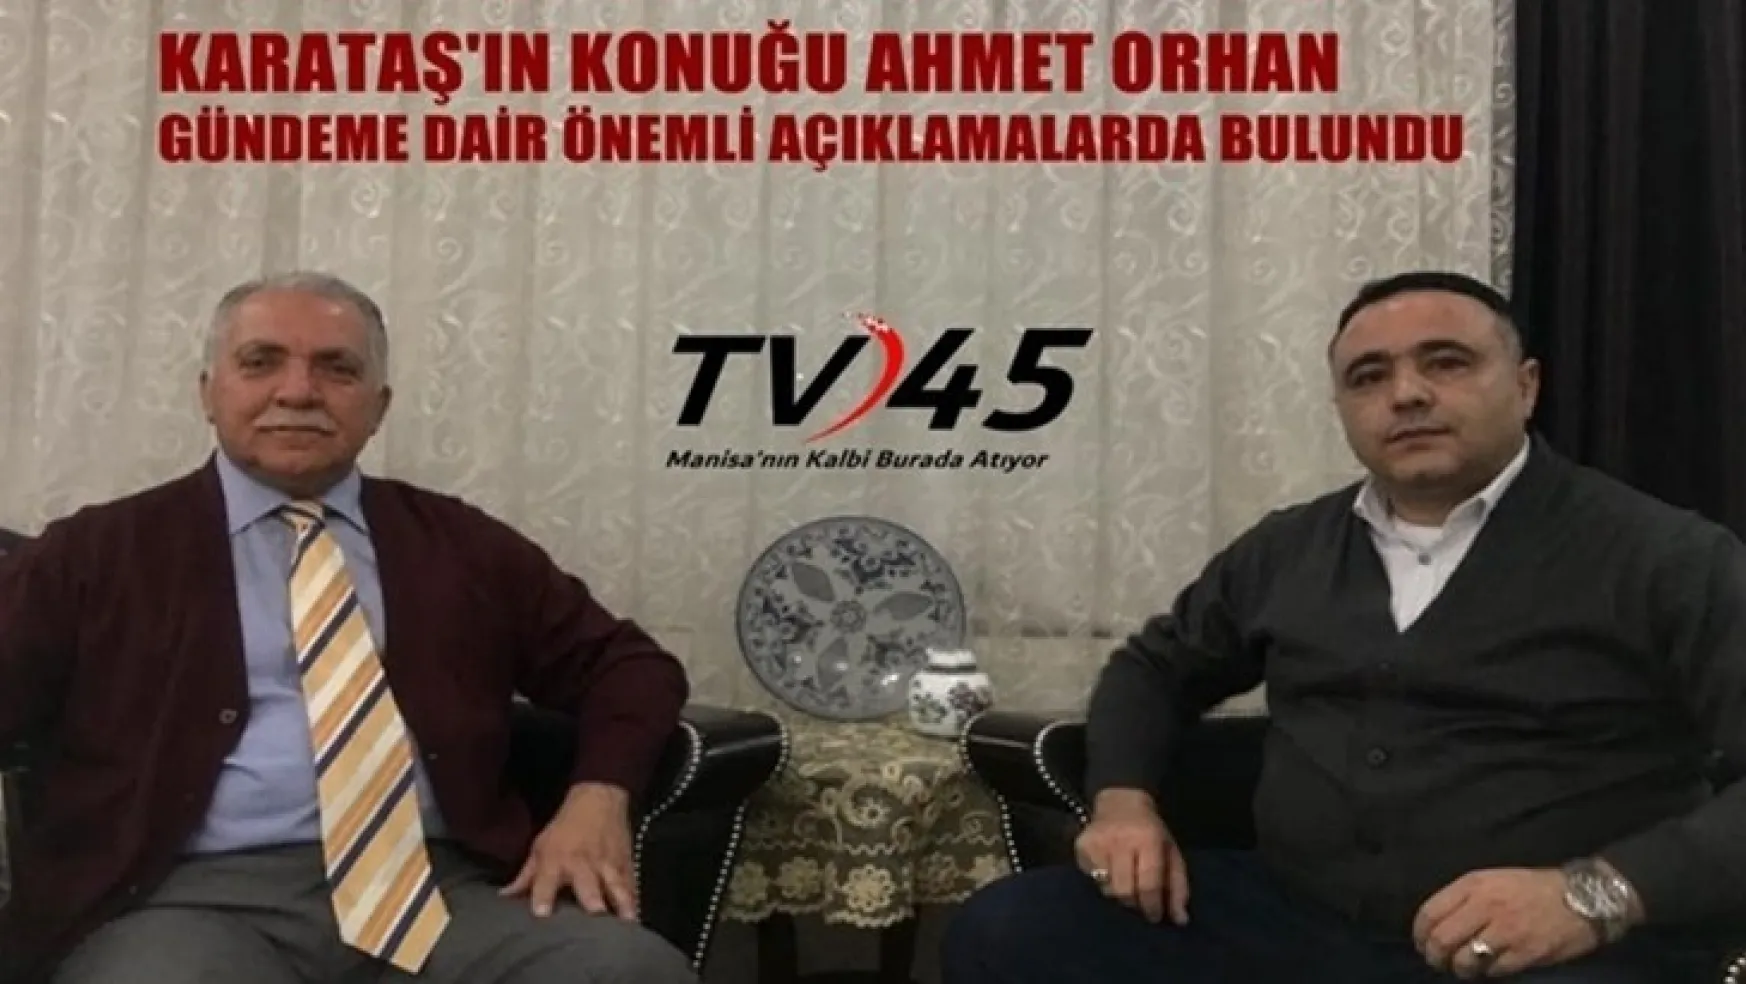 TV45 Gündem Özel'de Karataş'ın Konuğu Ahmet Orhan'dan Önemli Açıklamalar